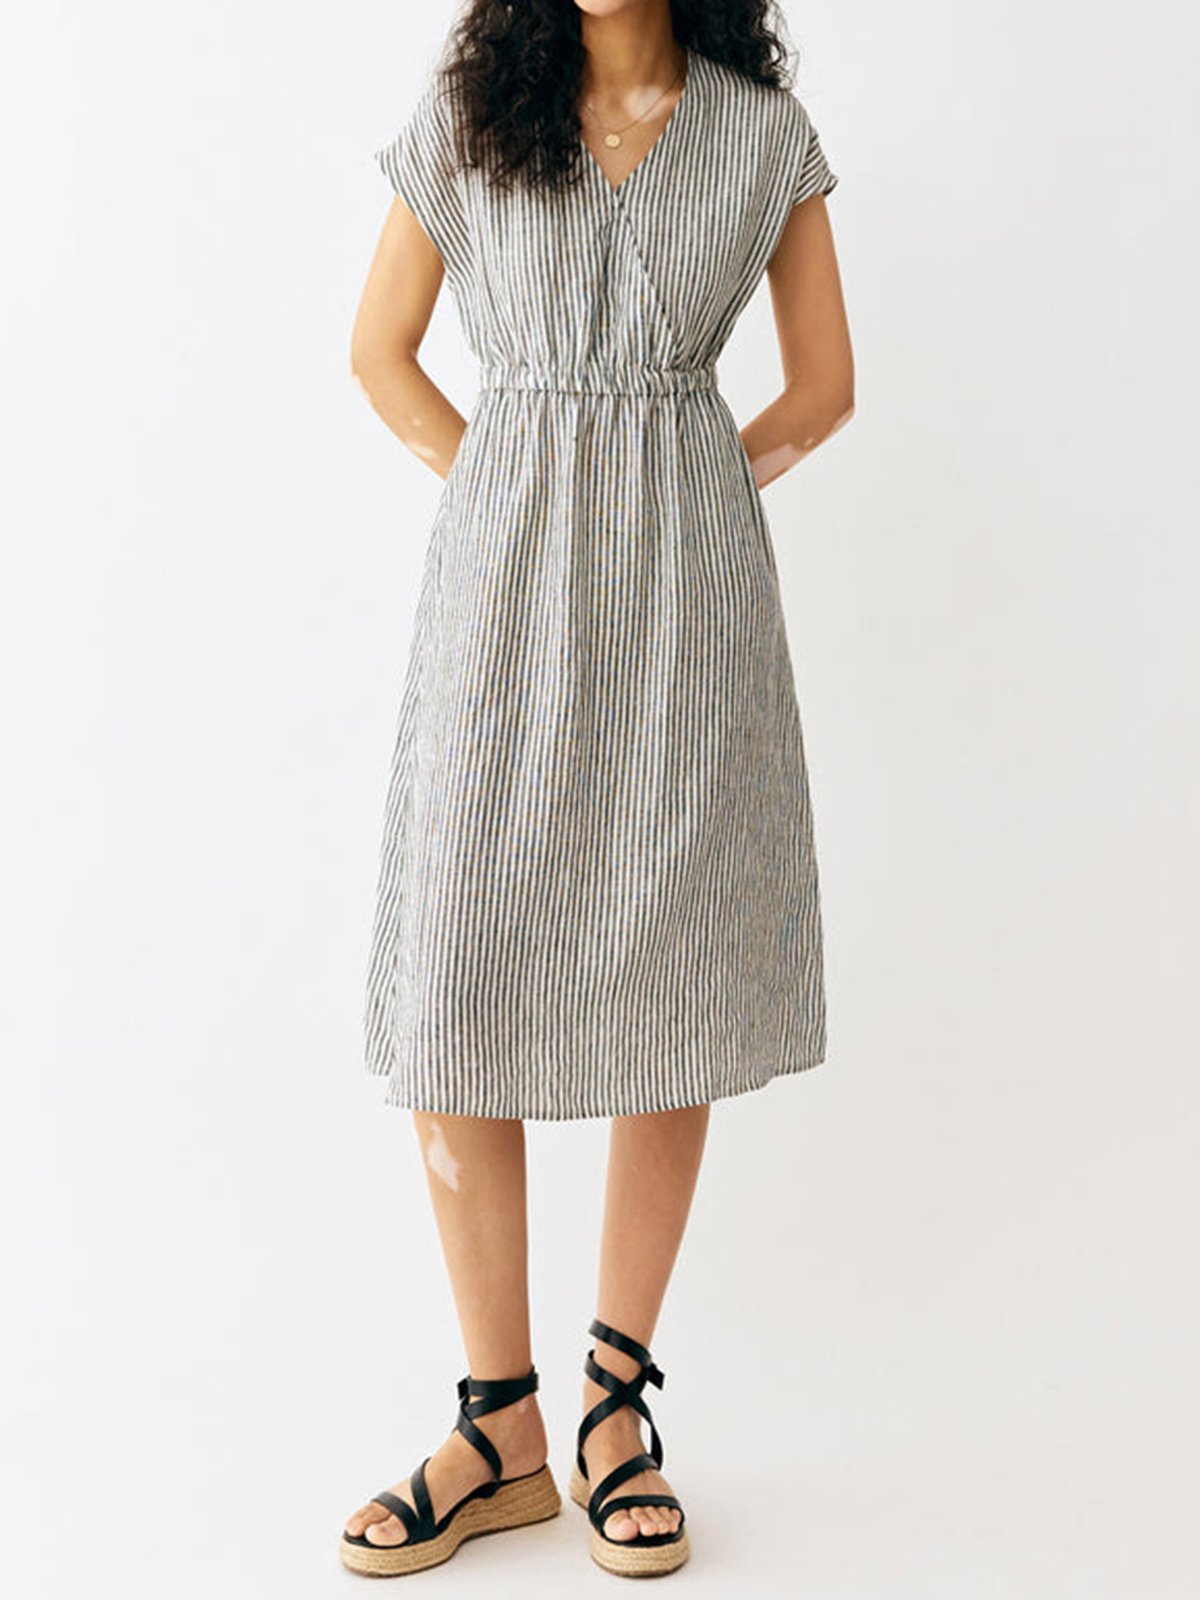 Kira 100% Linen Striped Dress with Elastic Waistband